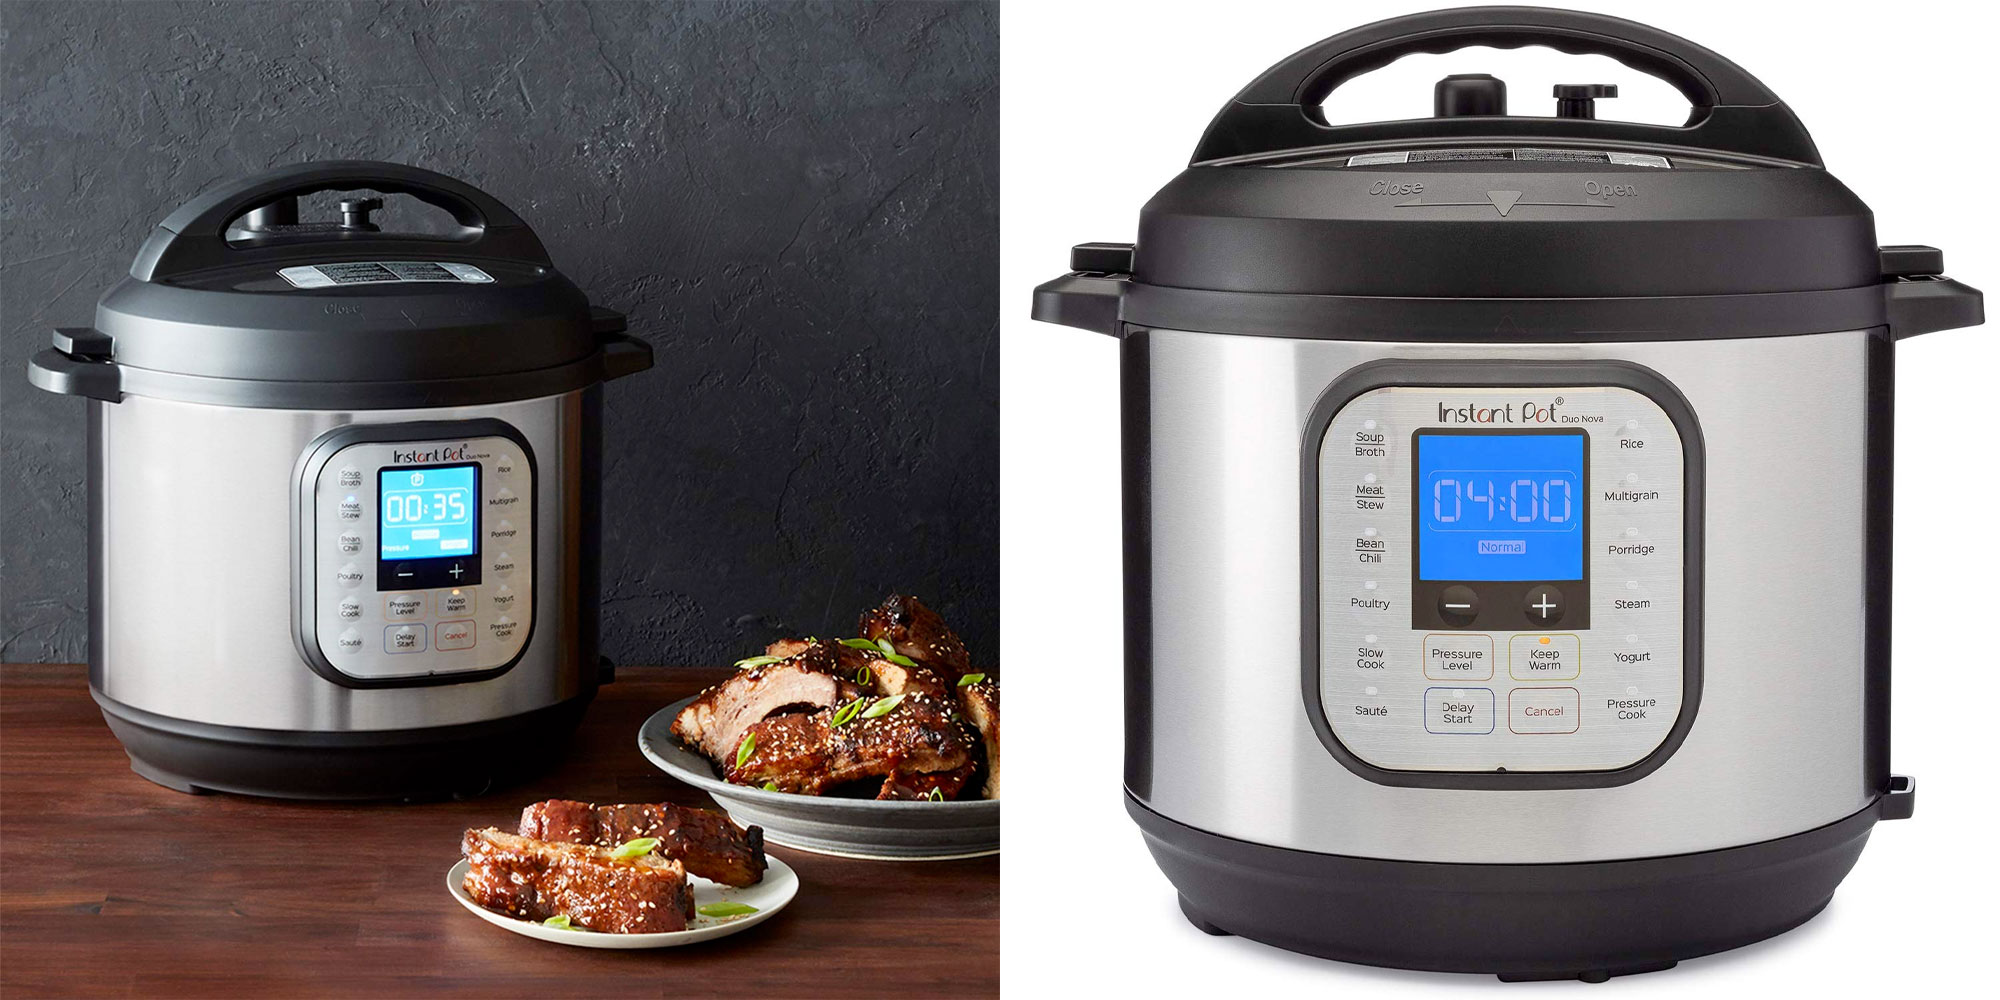 The Instant  Pot  Duo Nova 6 quart pressure cooker is a 